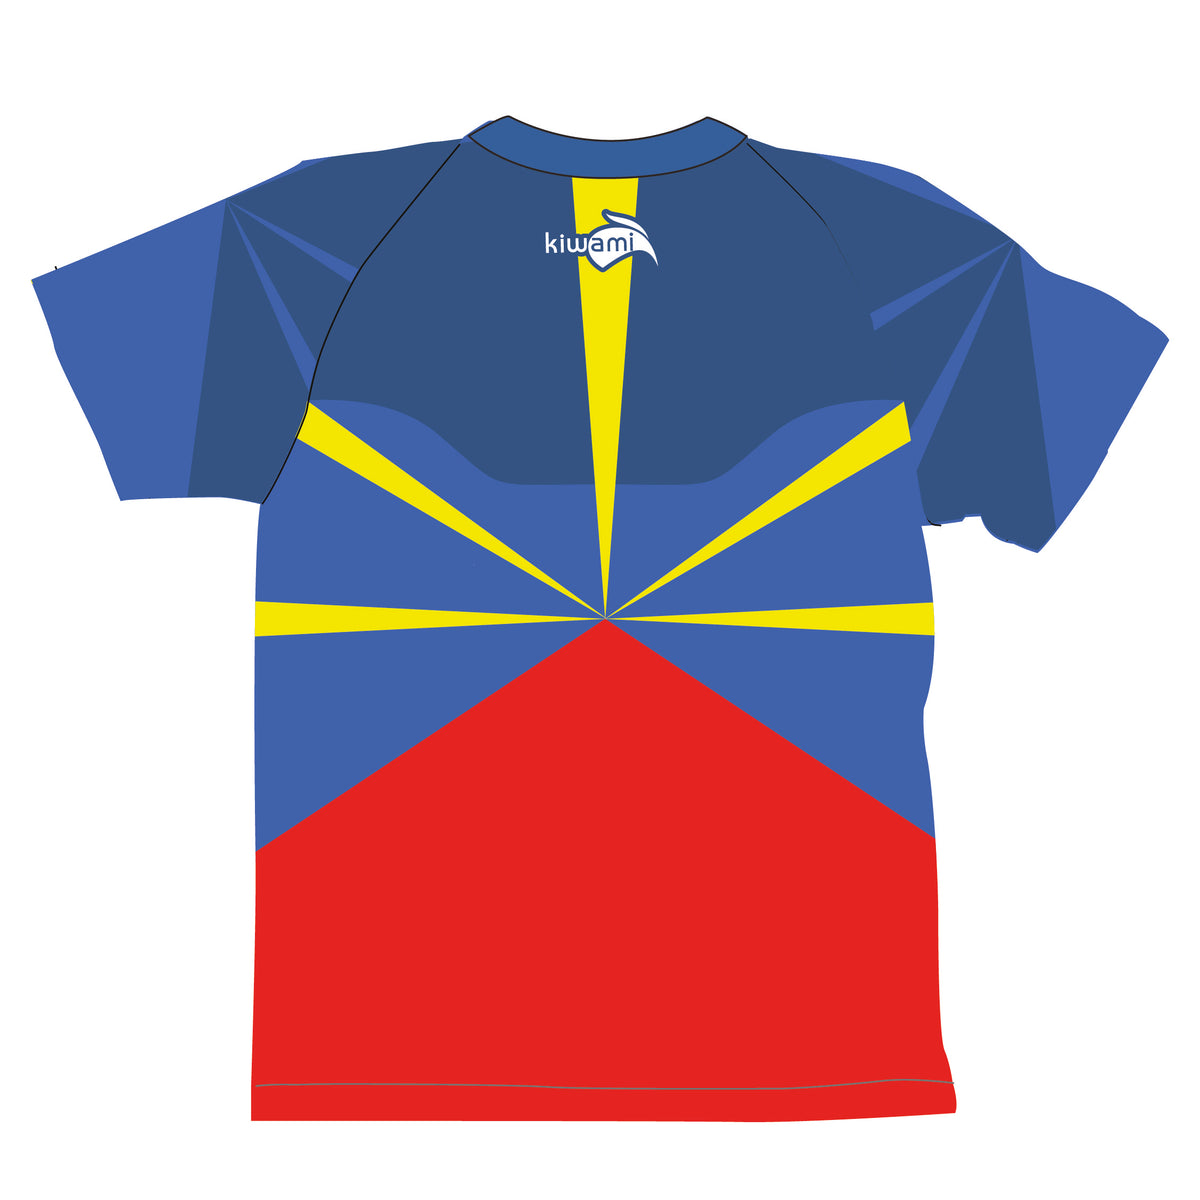 Tee-shirt running homme île de la réunion fabrication française kiwami sports